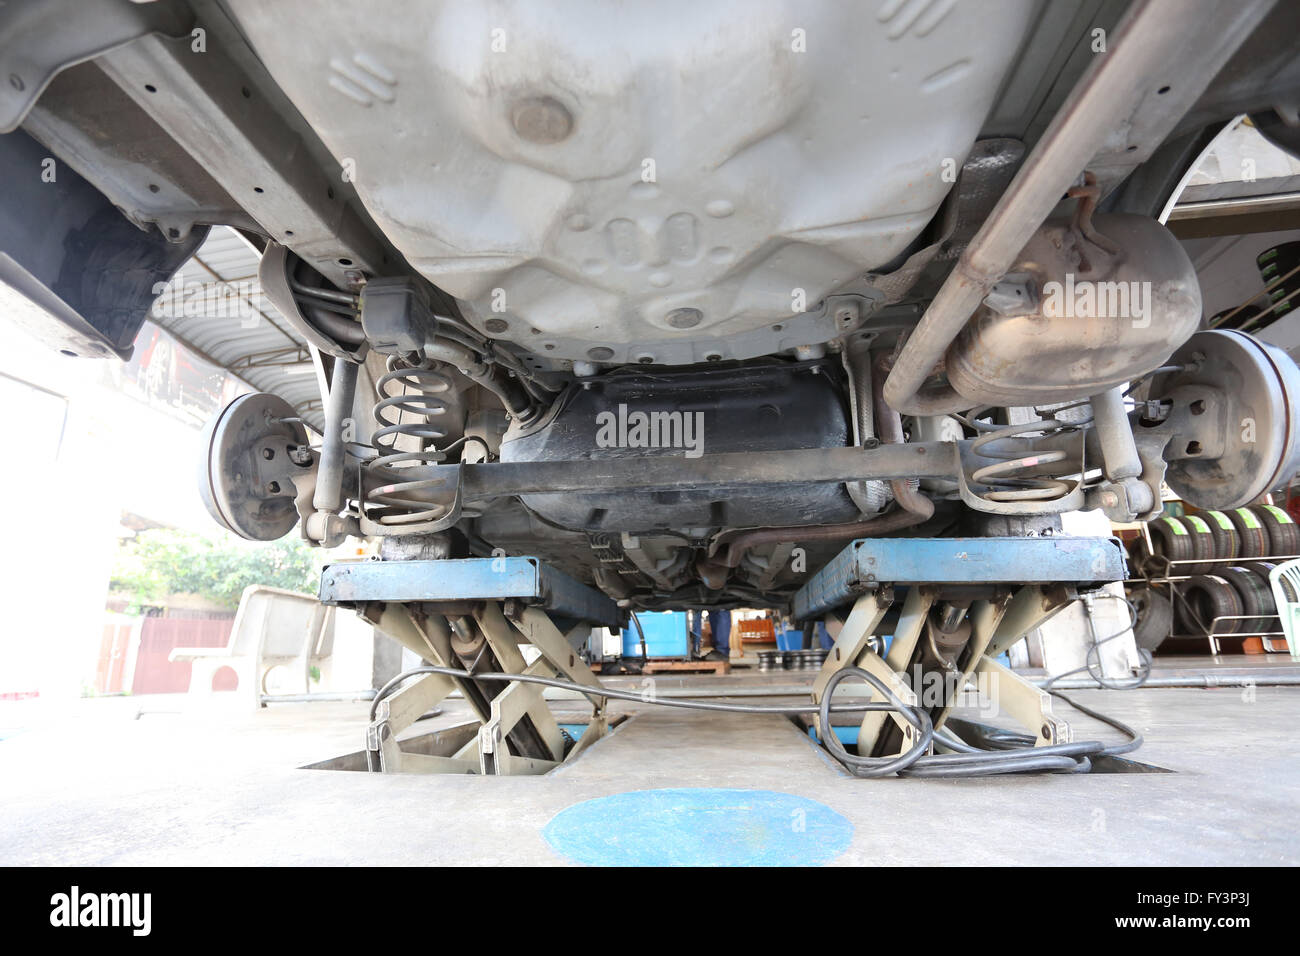 Mirar debajo del coche en el momento de la inspección de mantenimiento en la tienda del garaje. Foto de stock